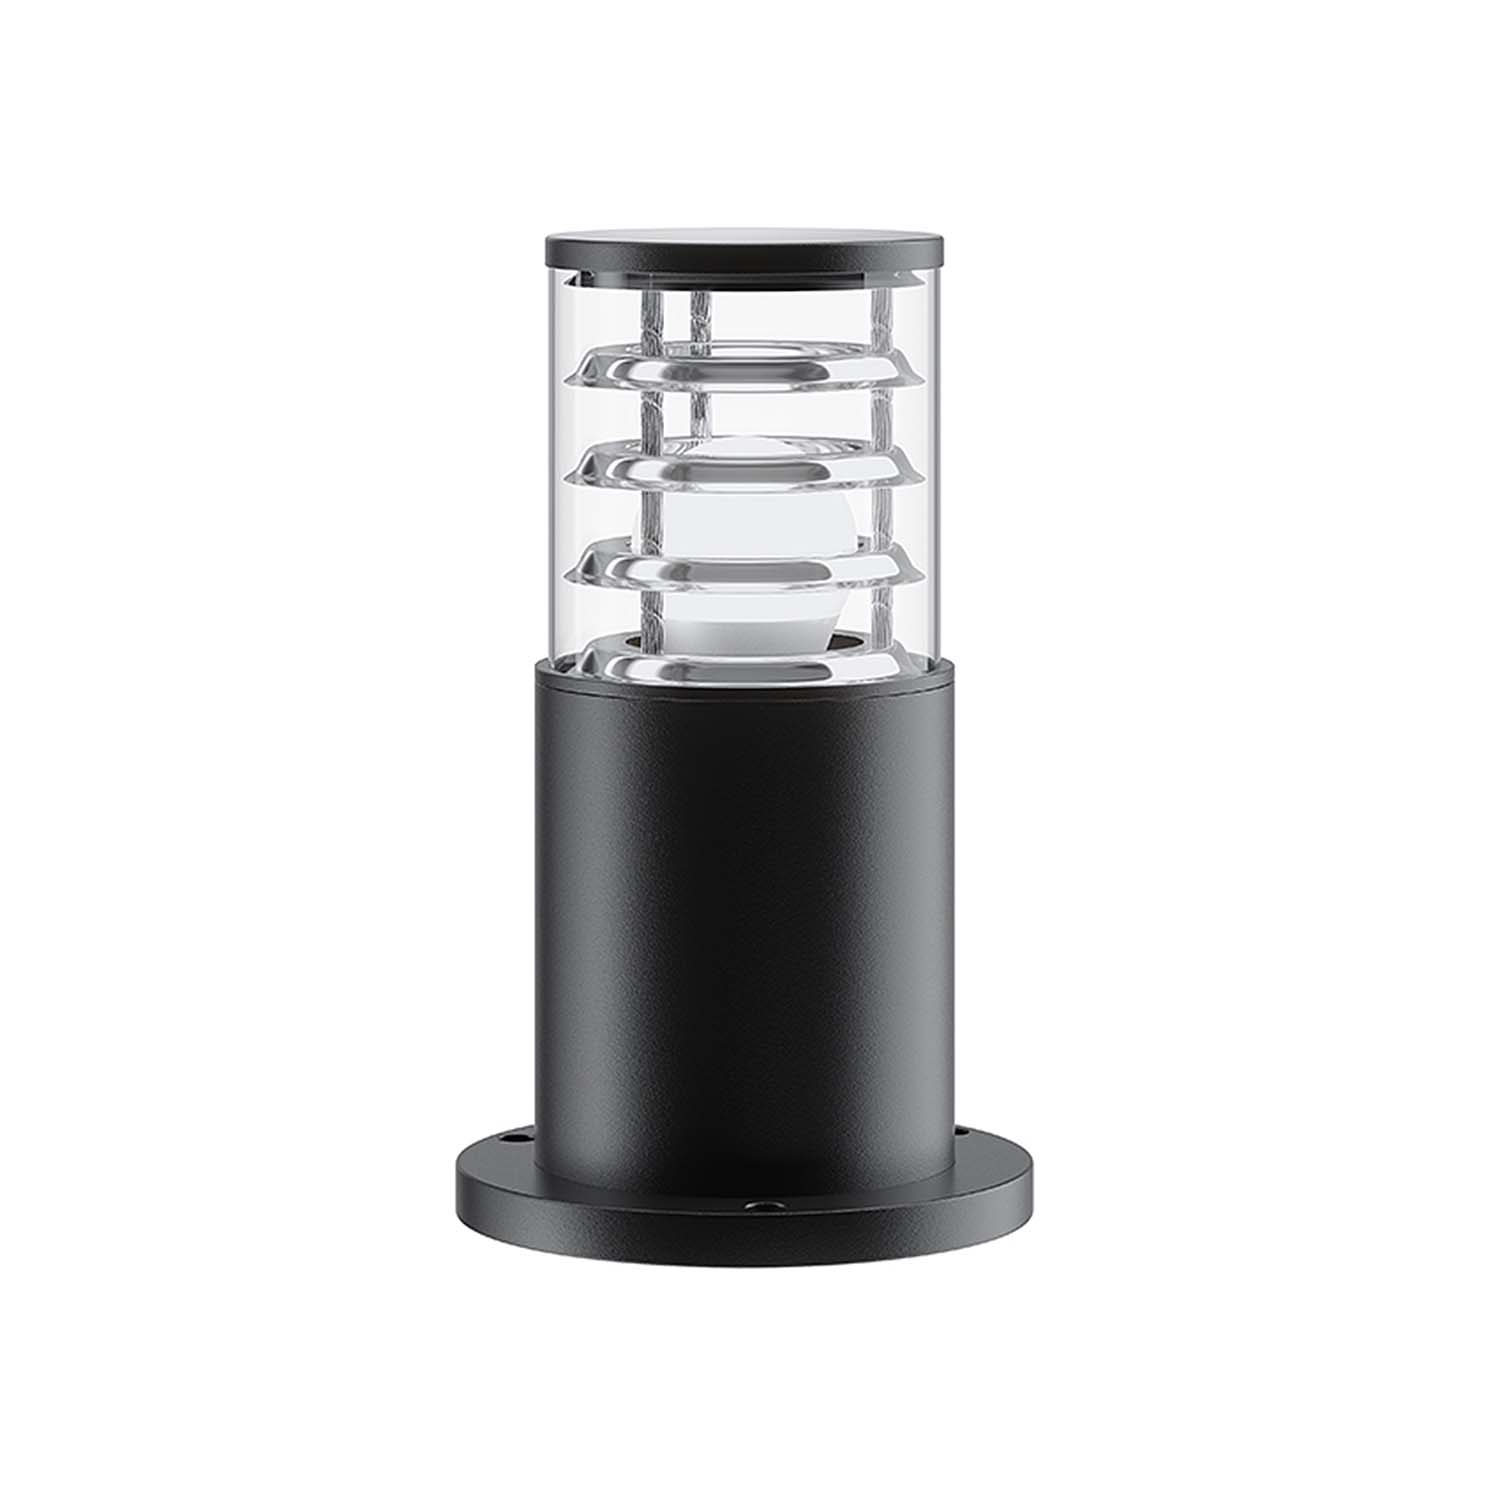 BRONX - Outdoor lamp, IP54 waterproof post